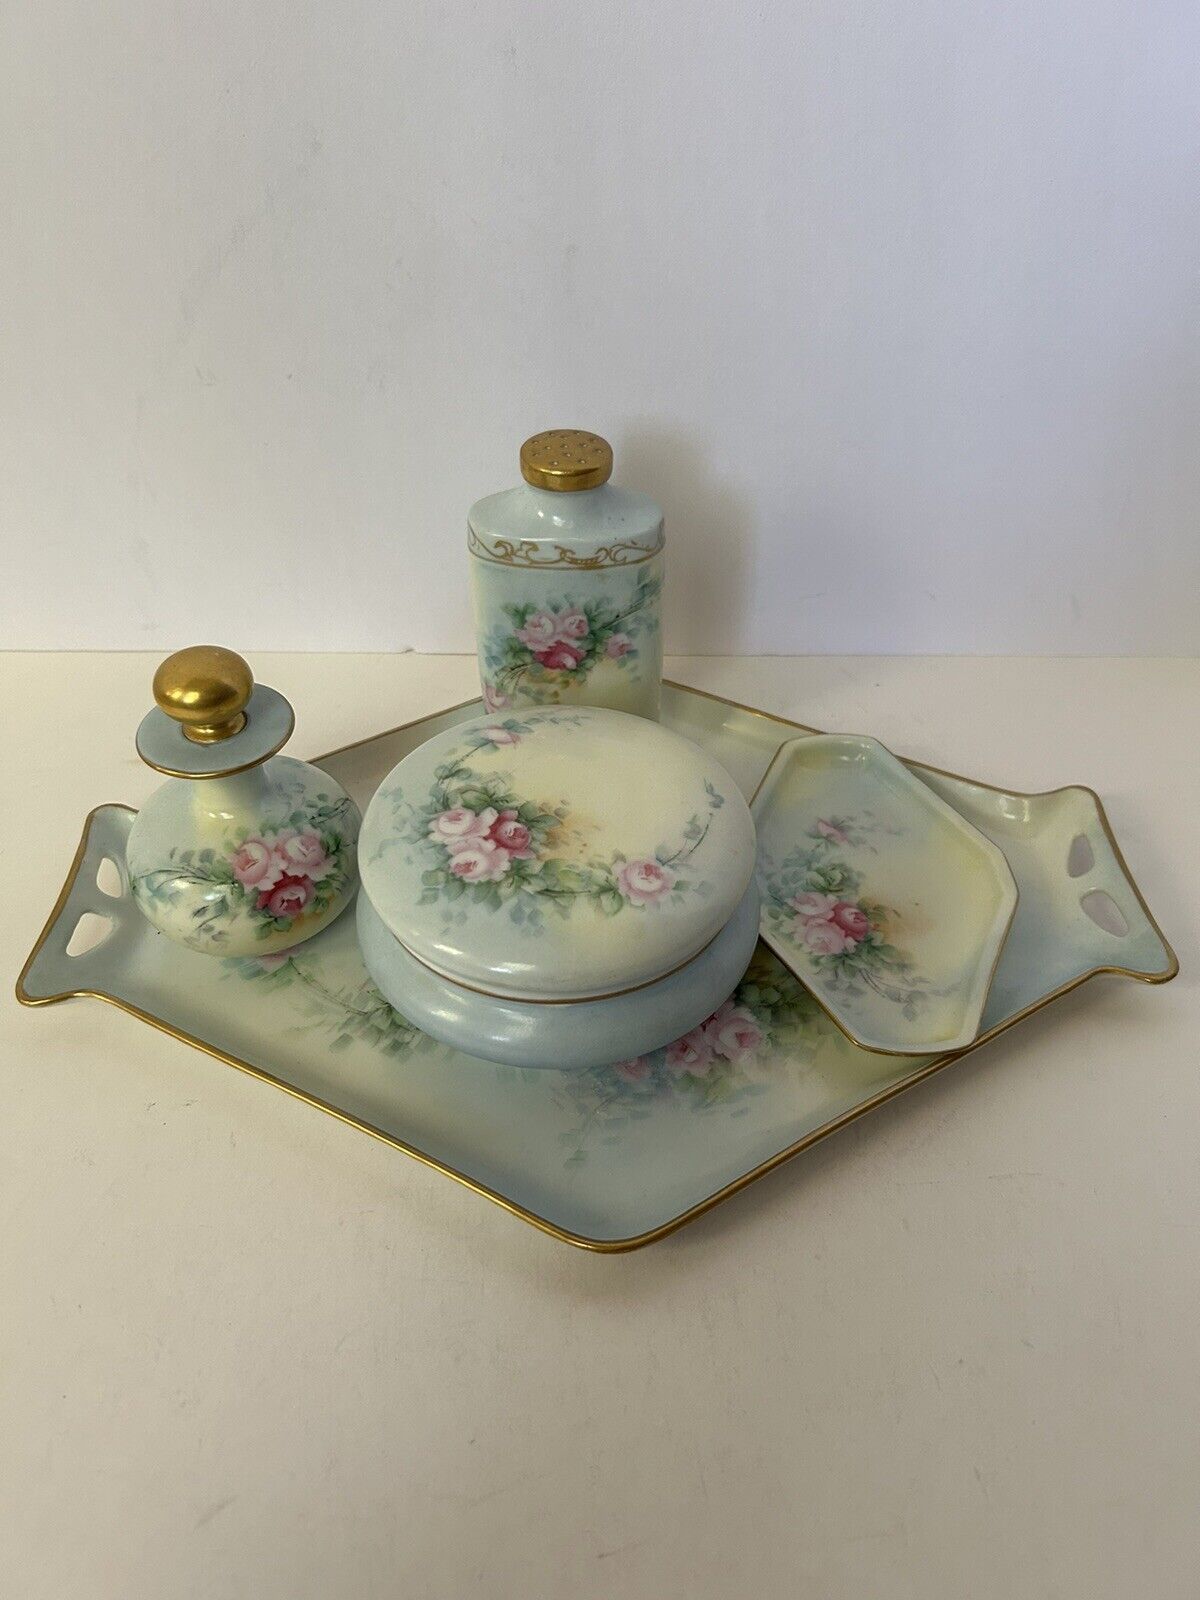 Antique RS Germany Porcelain Dresser Vanity Set Tray 5 Piece Floral Blue Gold